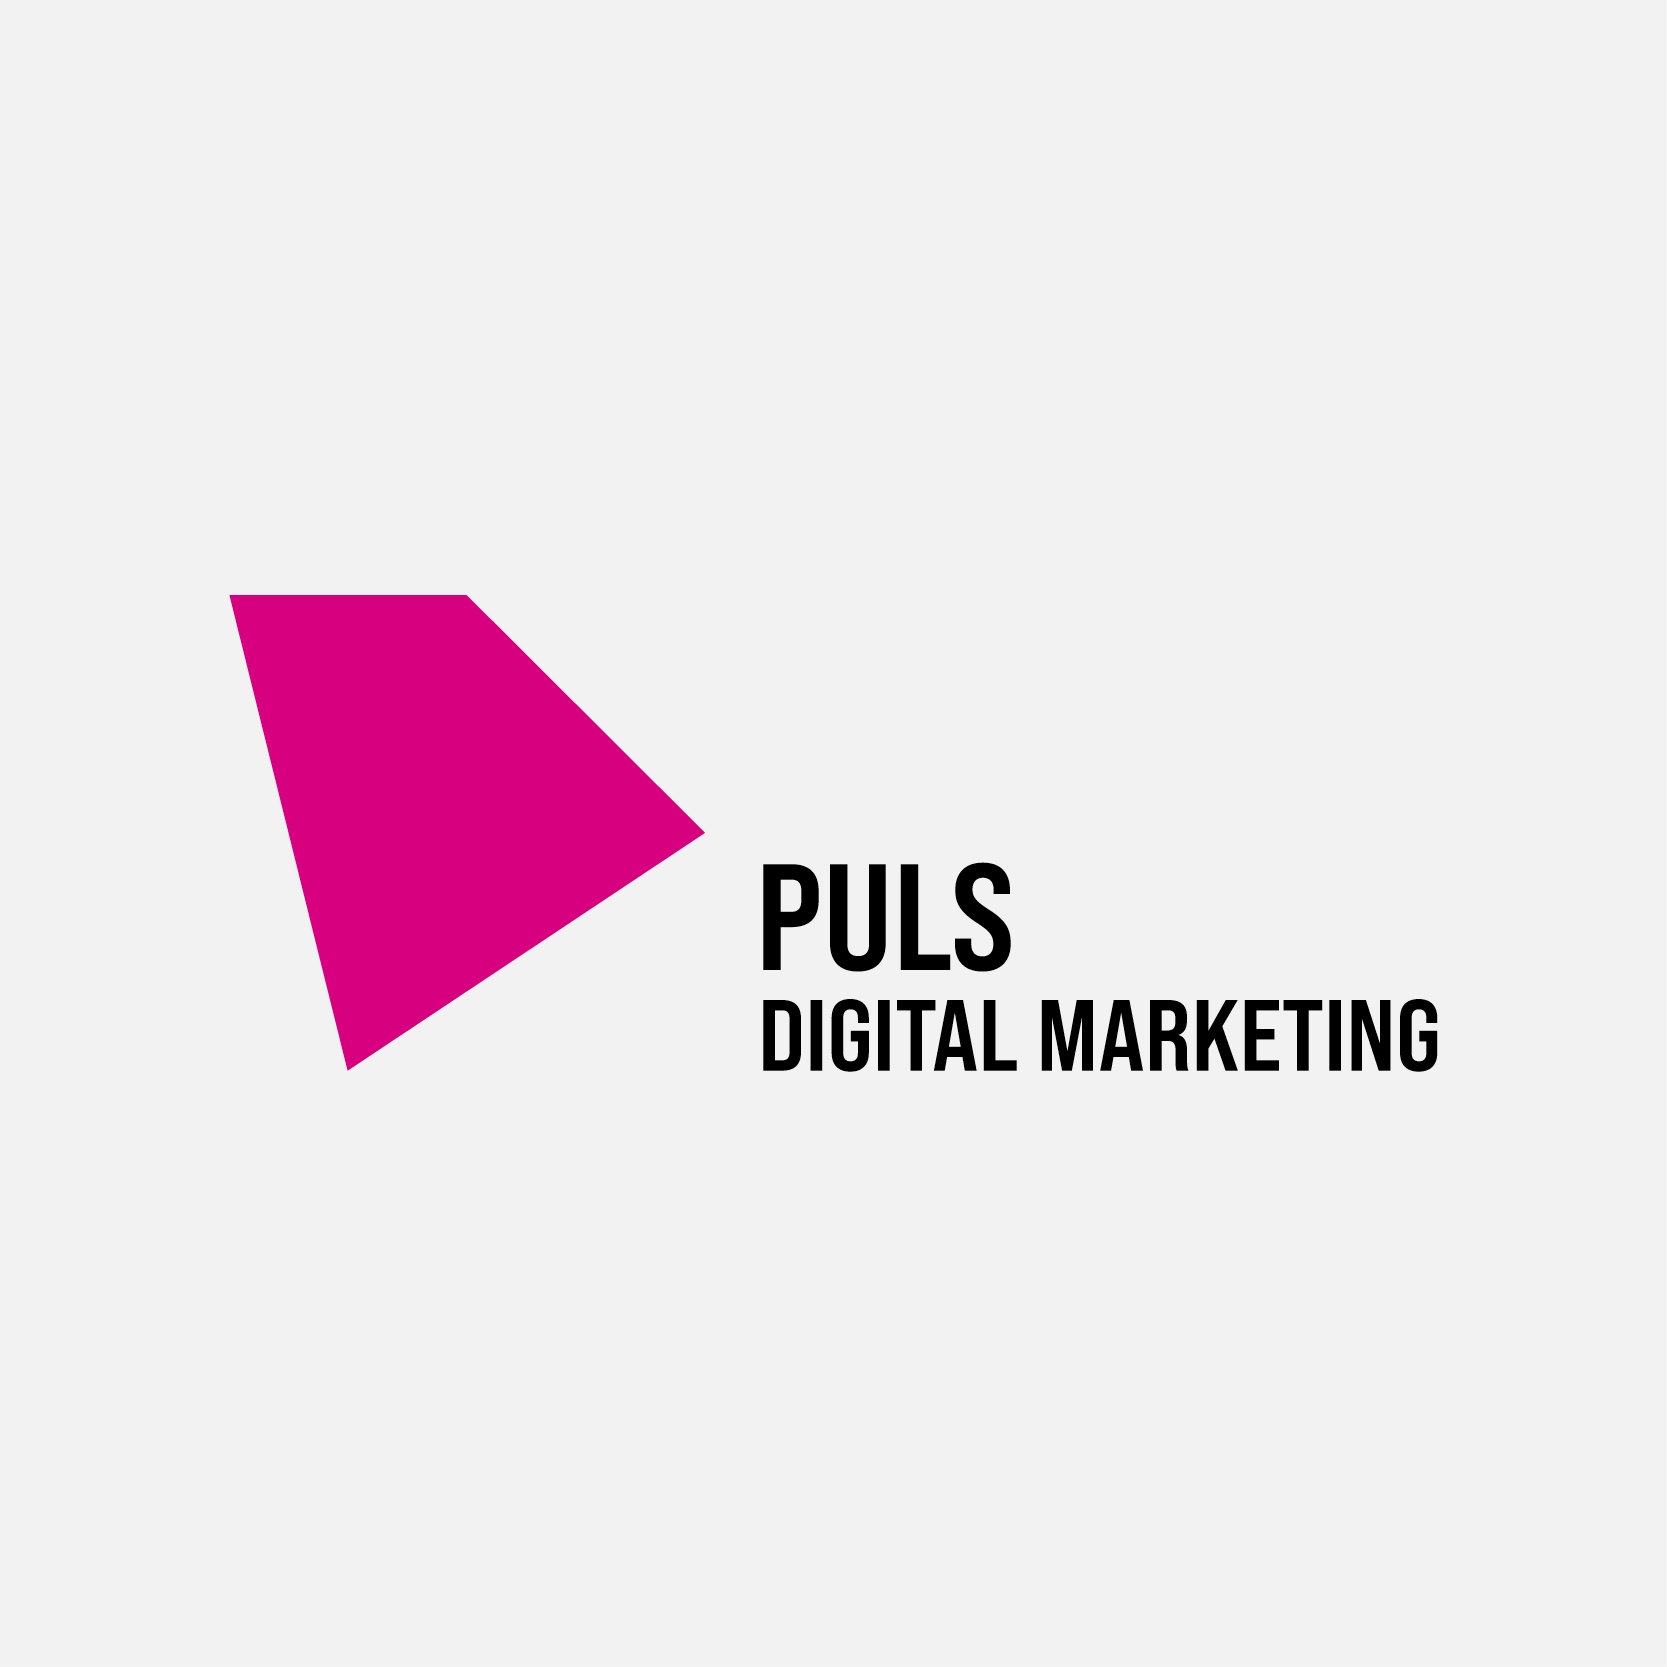 Puls_logos3.jpg